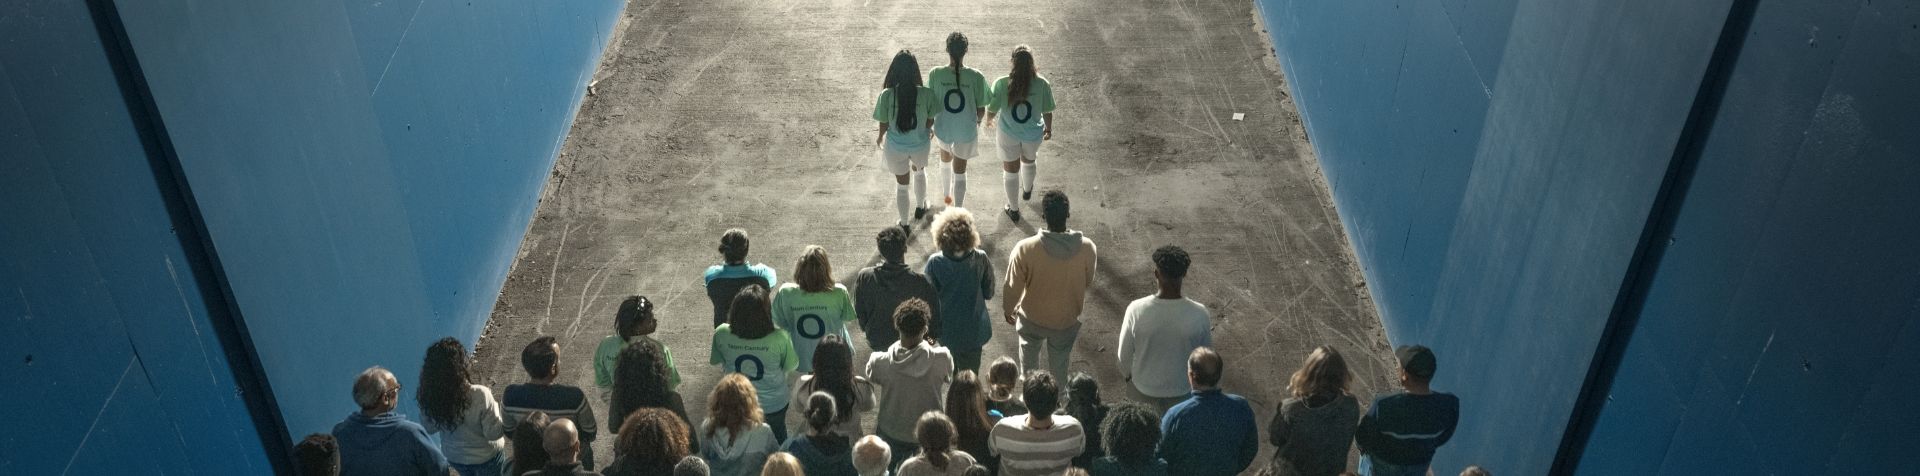 경기장으로 이어지는 복도를 걷는 한 무리의 축구 팬의 뒷모습을 위에서 바라본 모습. 긴 머리를 한 3명의 여성 축구 선수가 등에 파란색 숫자 0이 새겨진 녹색 Team Century 셔츠와 흰색 반바지, 축구 양말, 신발을 신고 몇 걸음씩 그룹을 이끌고 있습니다.